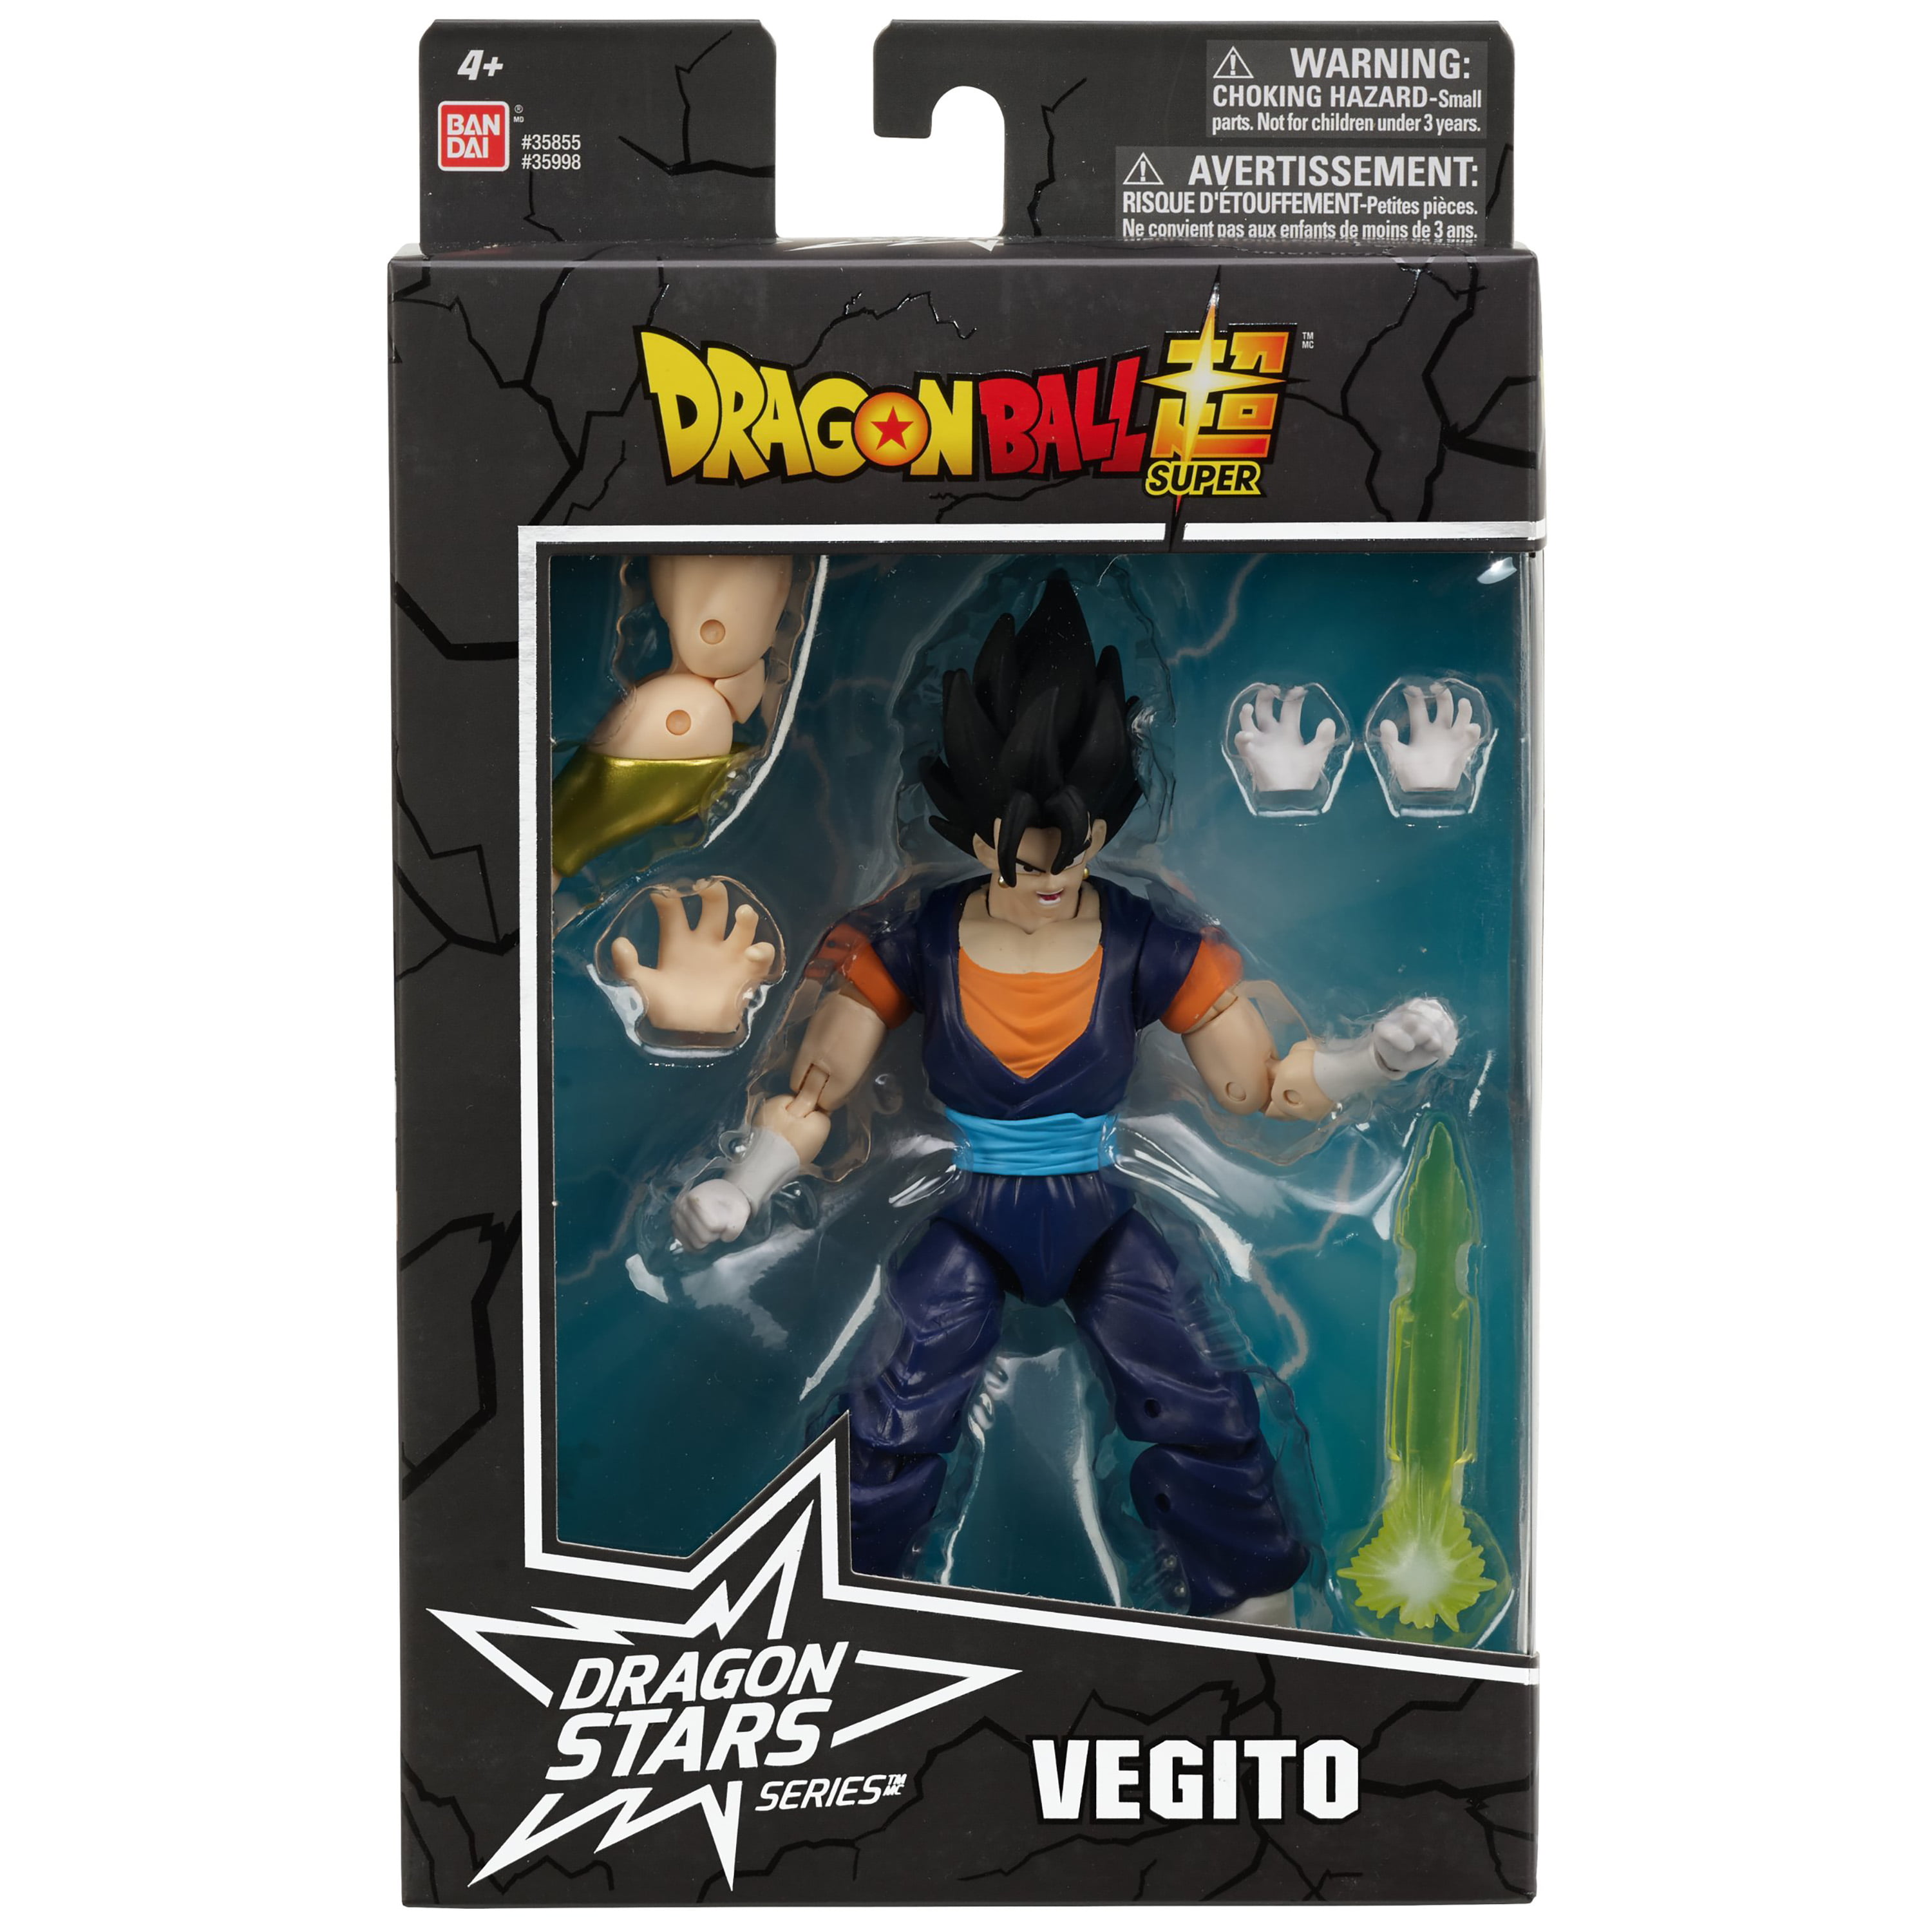 Dragon Stars Series Vegito Figure #4-6.5 inch figure Dragon Ball Super 